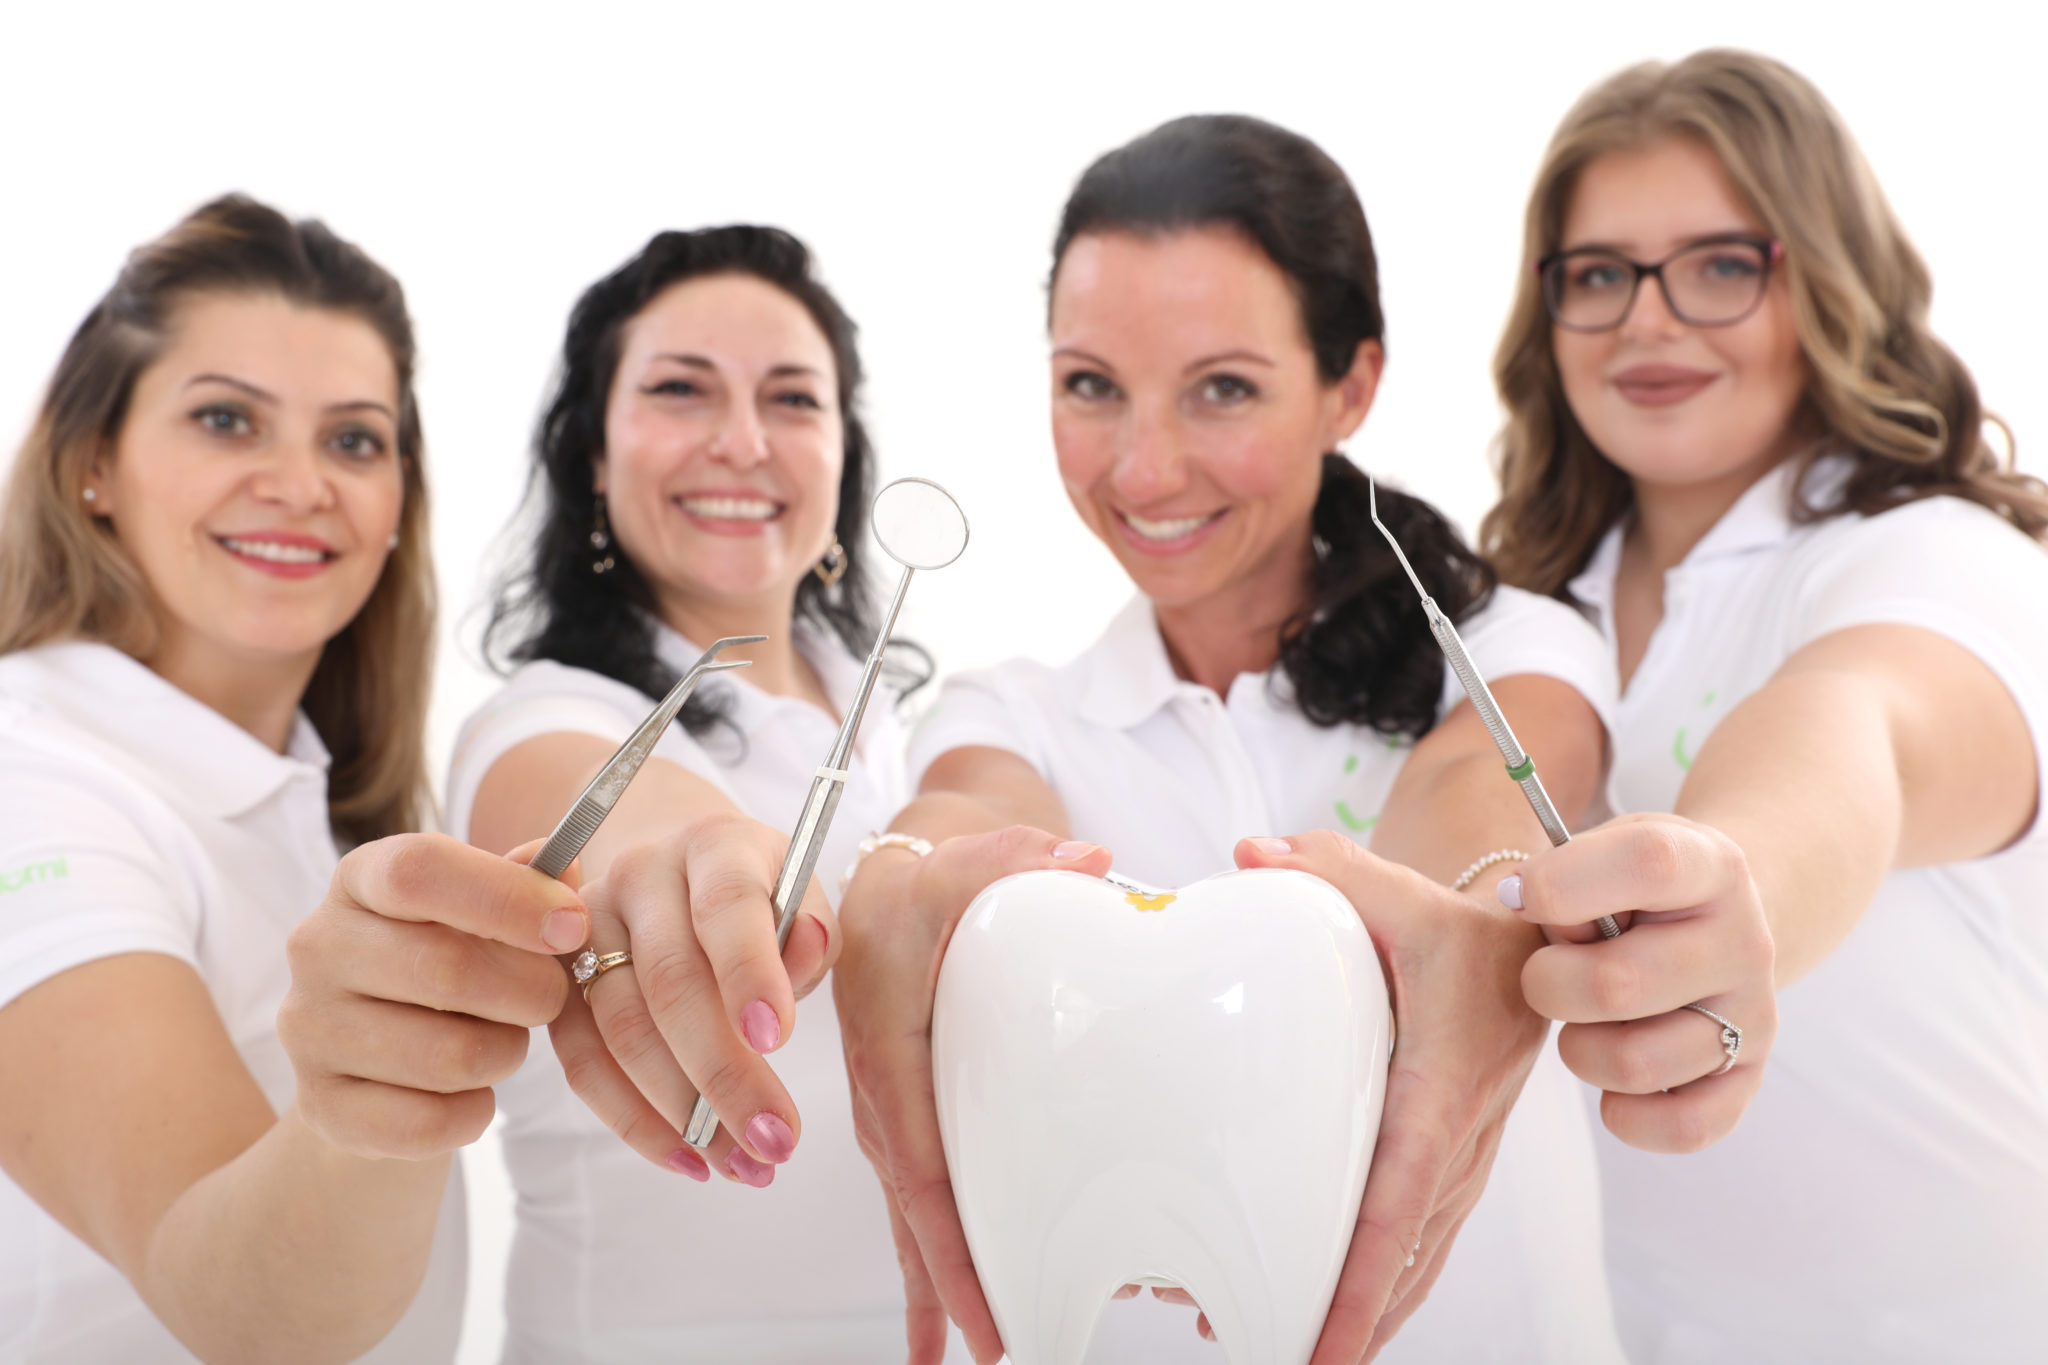 Vier glückliche Frauen im medizinischen Bereich präsentieren zahnärztliche Instrumente und einen großen Modellzahn.